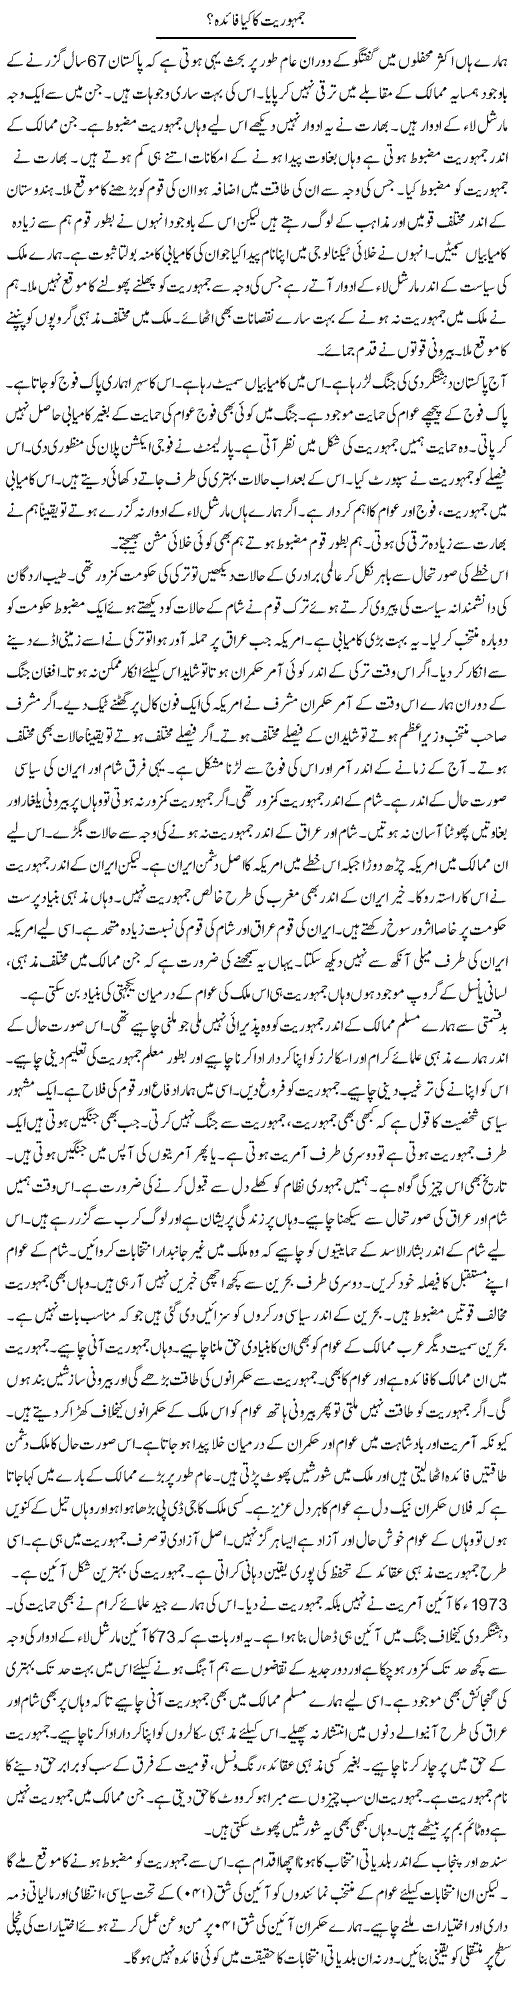 Jamhuriat Ka Kia Faida? | Syed Zeeshan Haider | Daily Urdu Columns